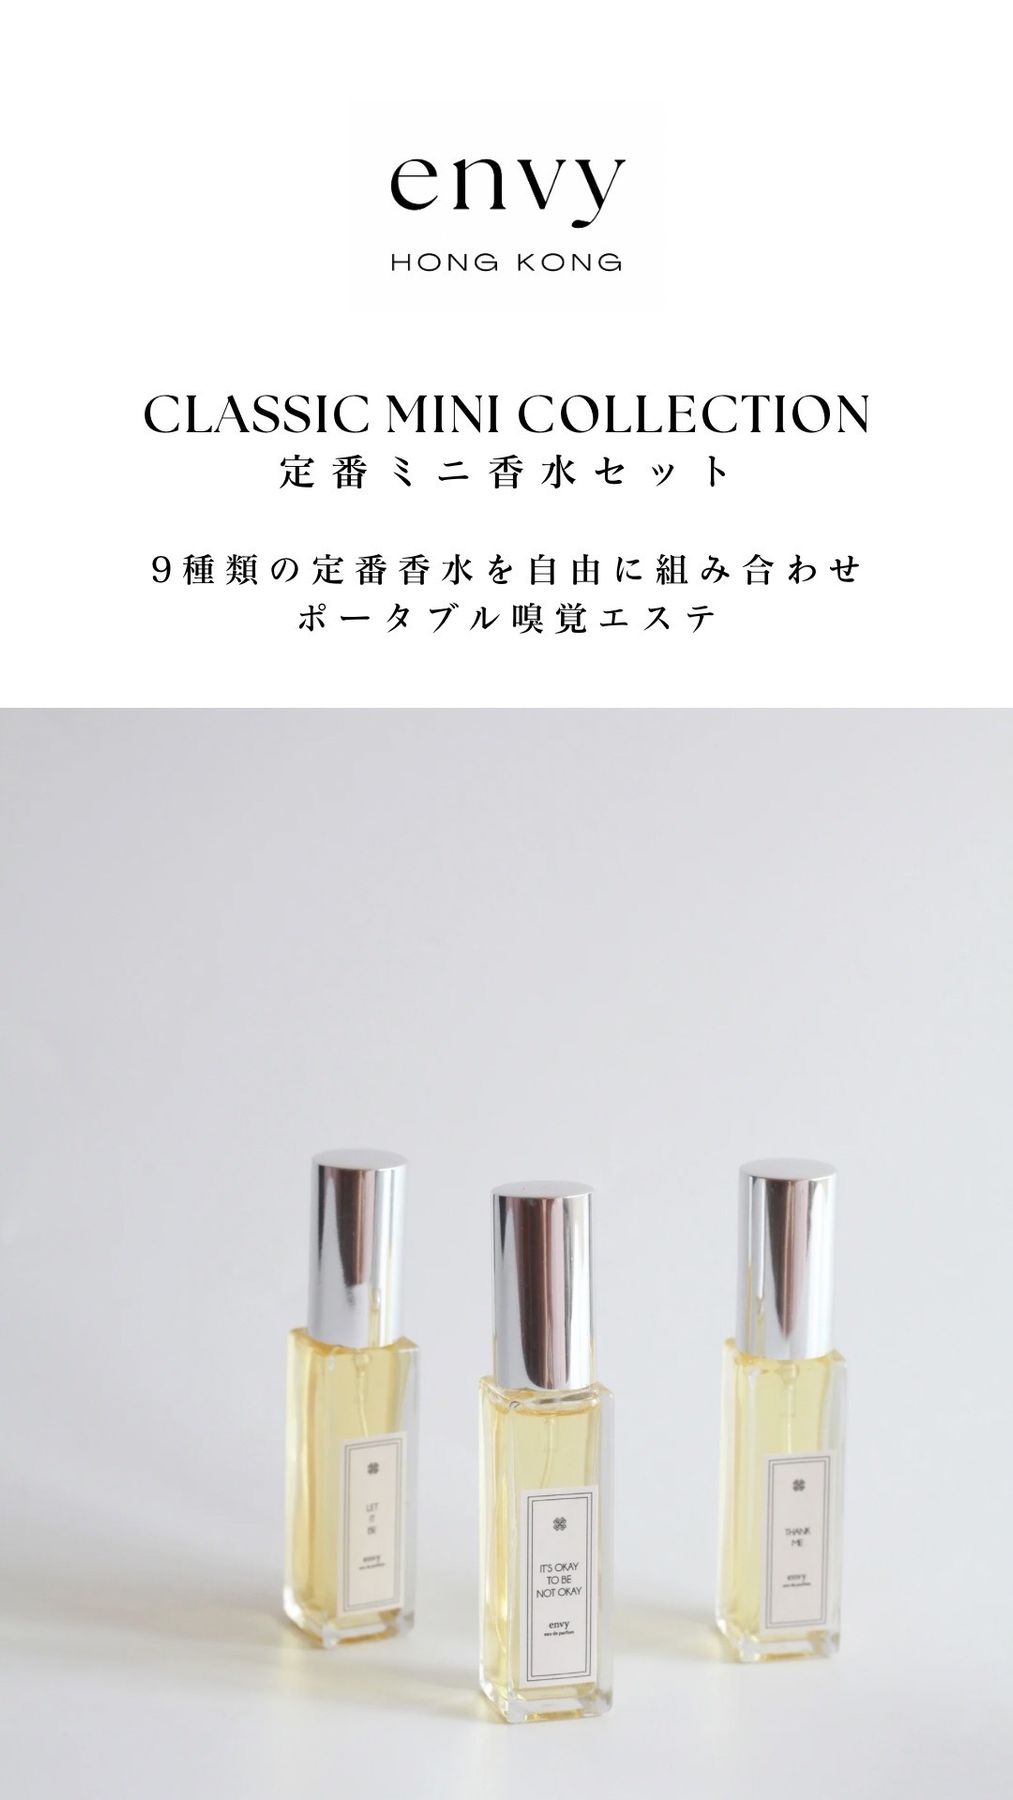 定番ミニ香水セット - ショップ envy 香港手作りの香水 香水 - Pinkoi